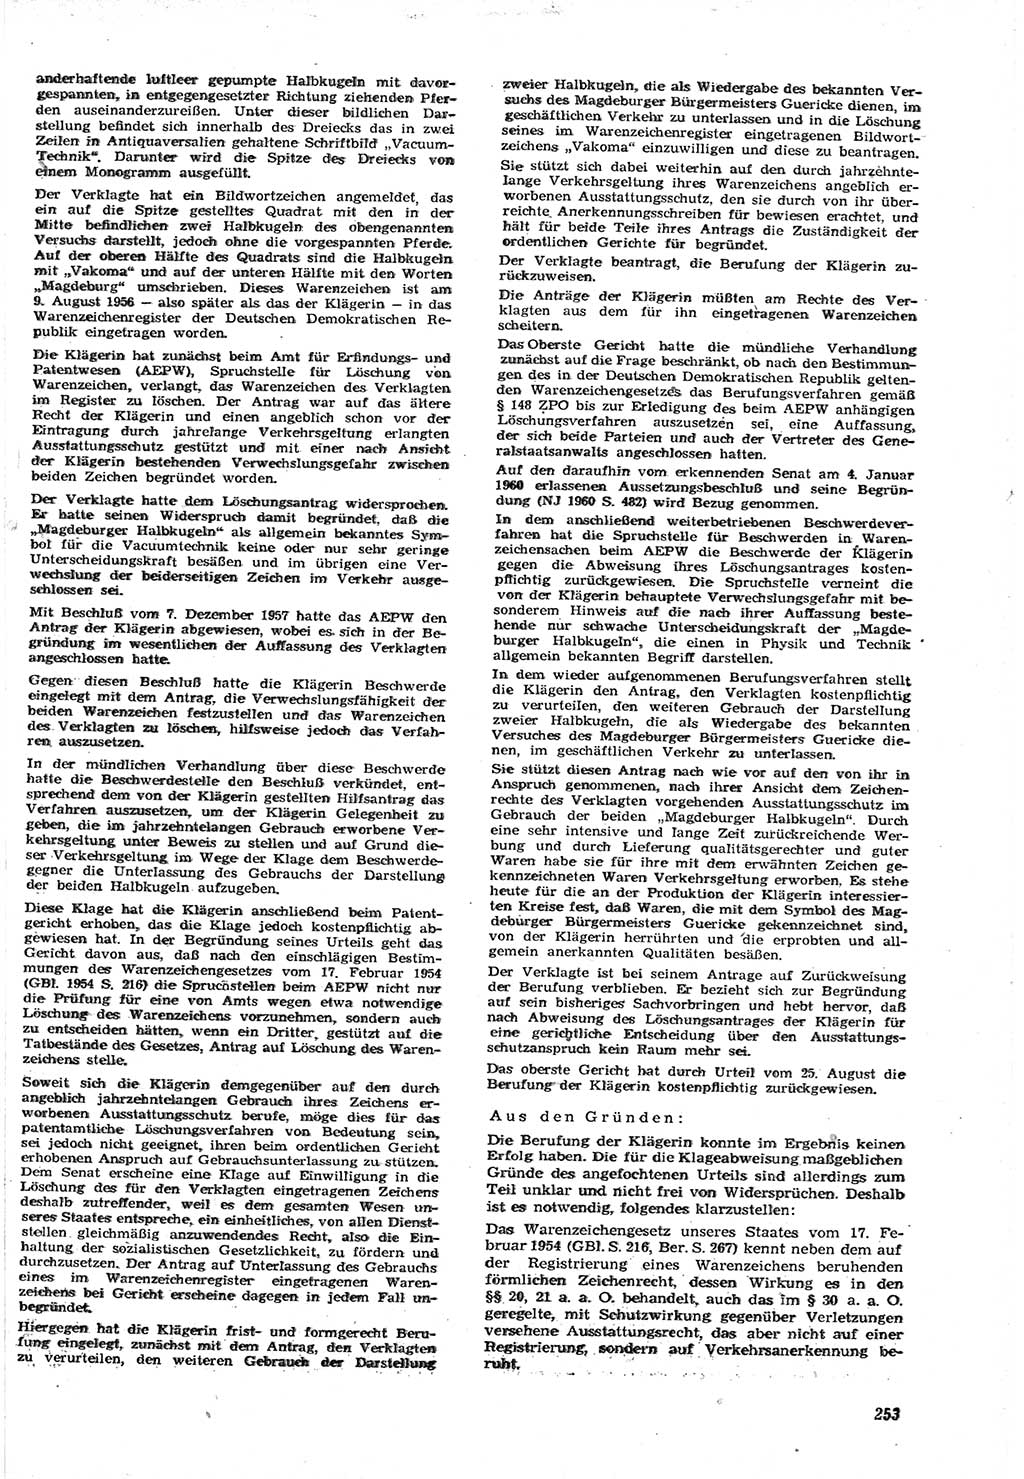 Neue Justiz (NJ), Zeitschrift für Recht und Rechtswissenschaft [Deutsche Demokratische Republik (DDR)], 15. Jahrgang 1961, Seite 253 (NJ DDR 1961, S. 253)